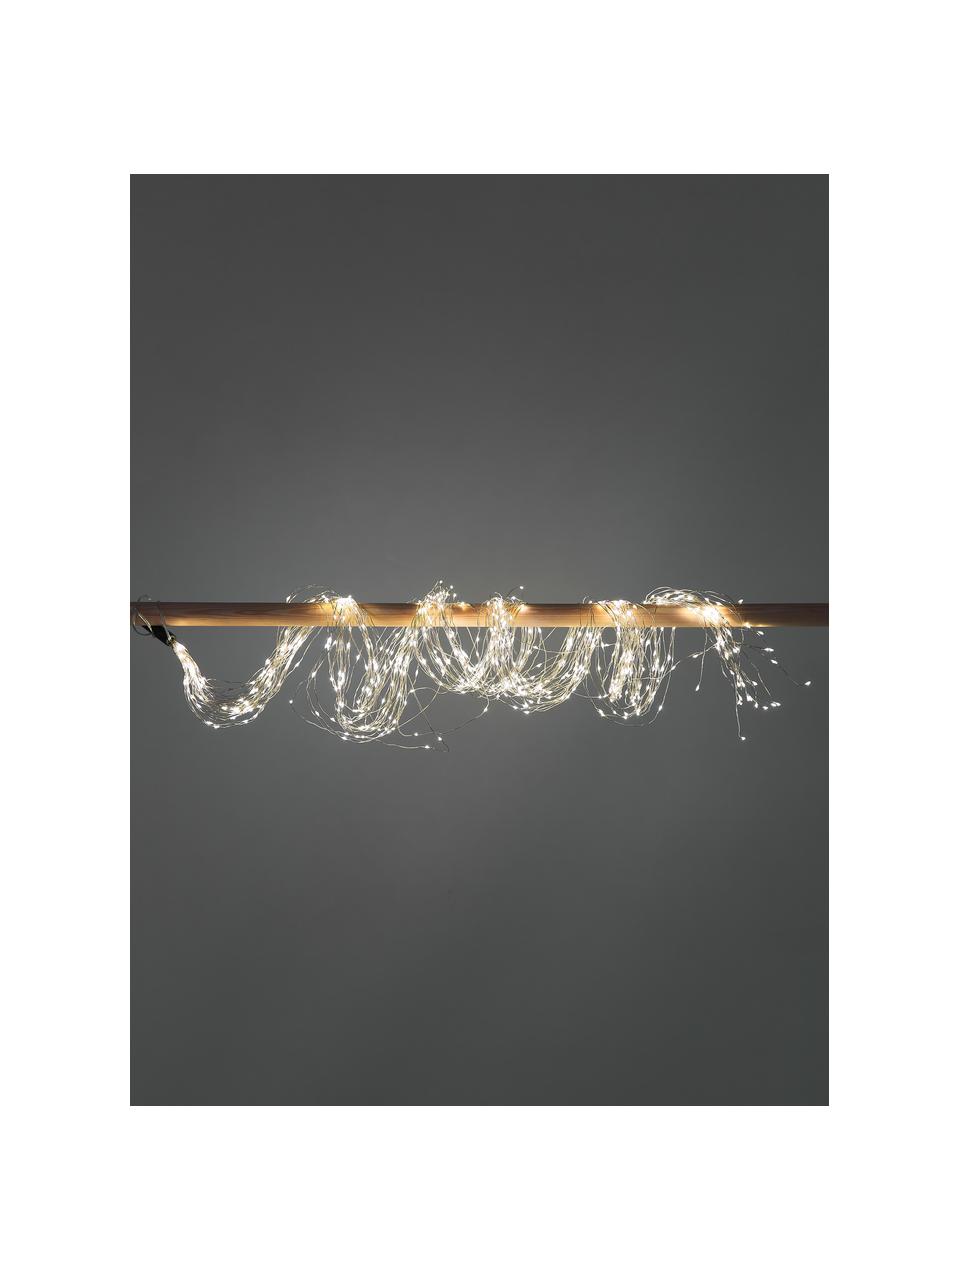 Łańcuch świetlny LED Clusters, dł. 190 cm, ciepła biel, Tworzywo sztuczne, Odcienie srebrnego, D 190 cm